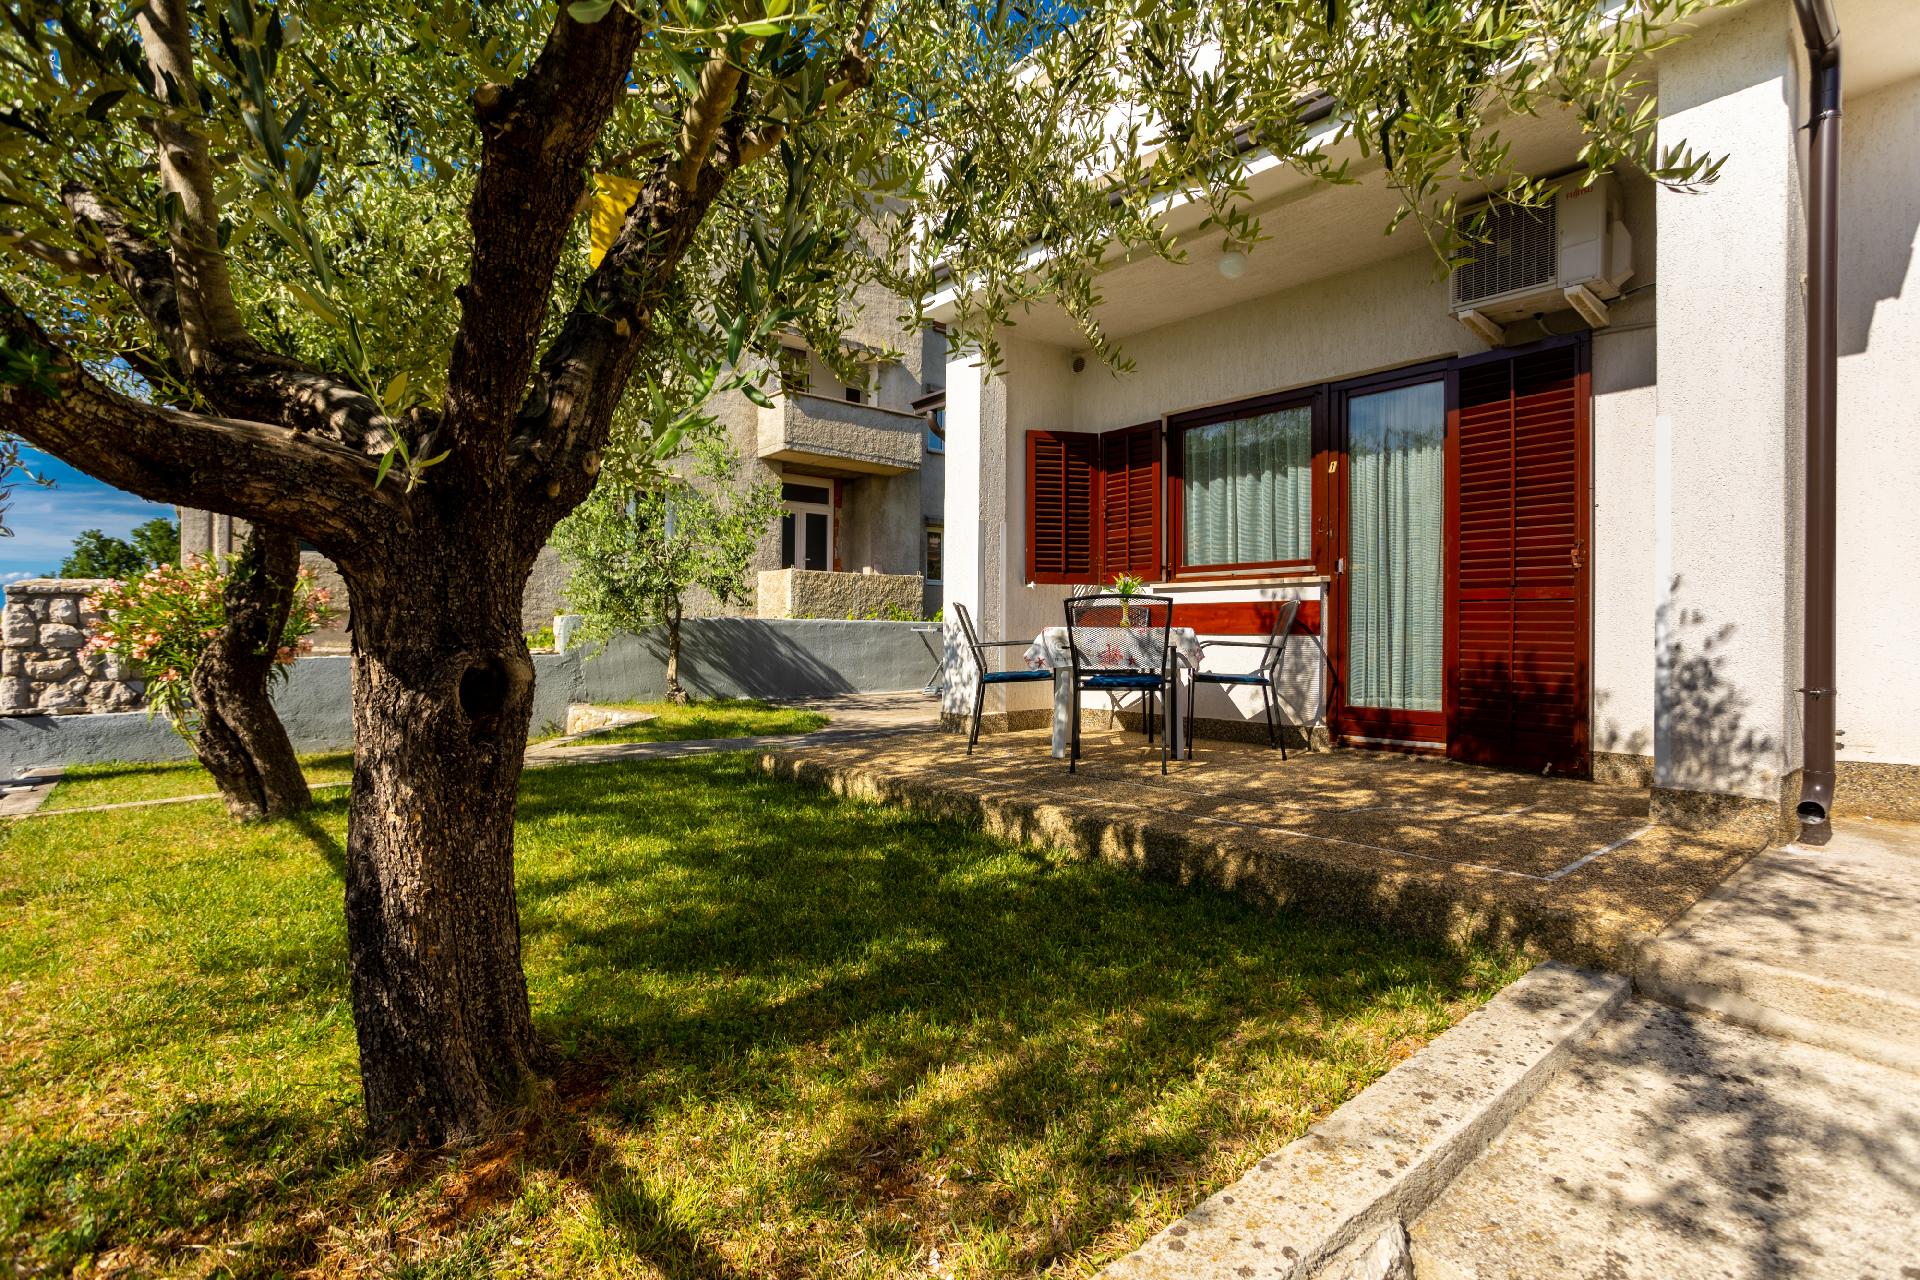 Ferienwohnung für 4 Personen ca. 55 m² i Ferienhaus in Kroatien